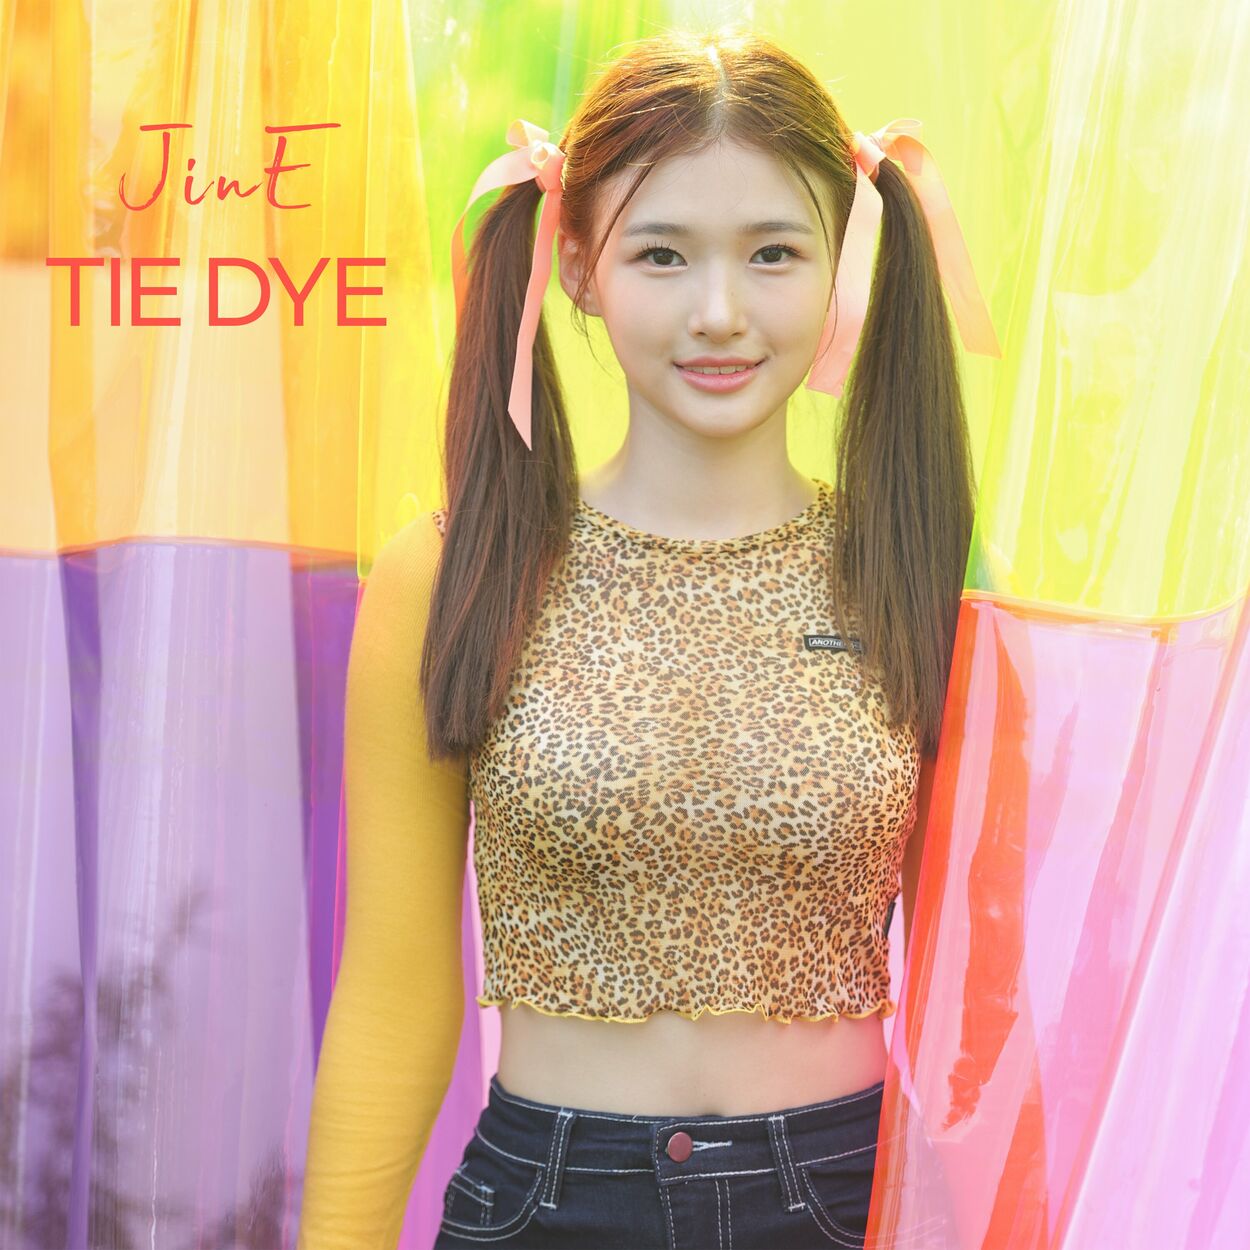 Jine – TIE DYE – Single